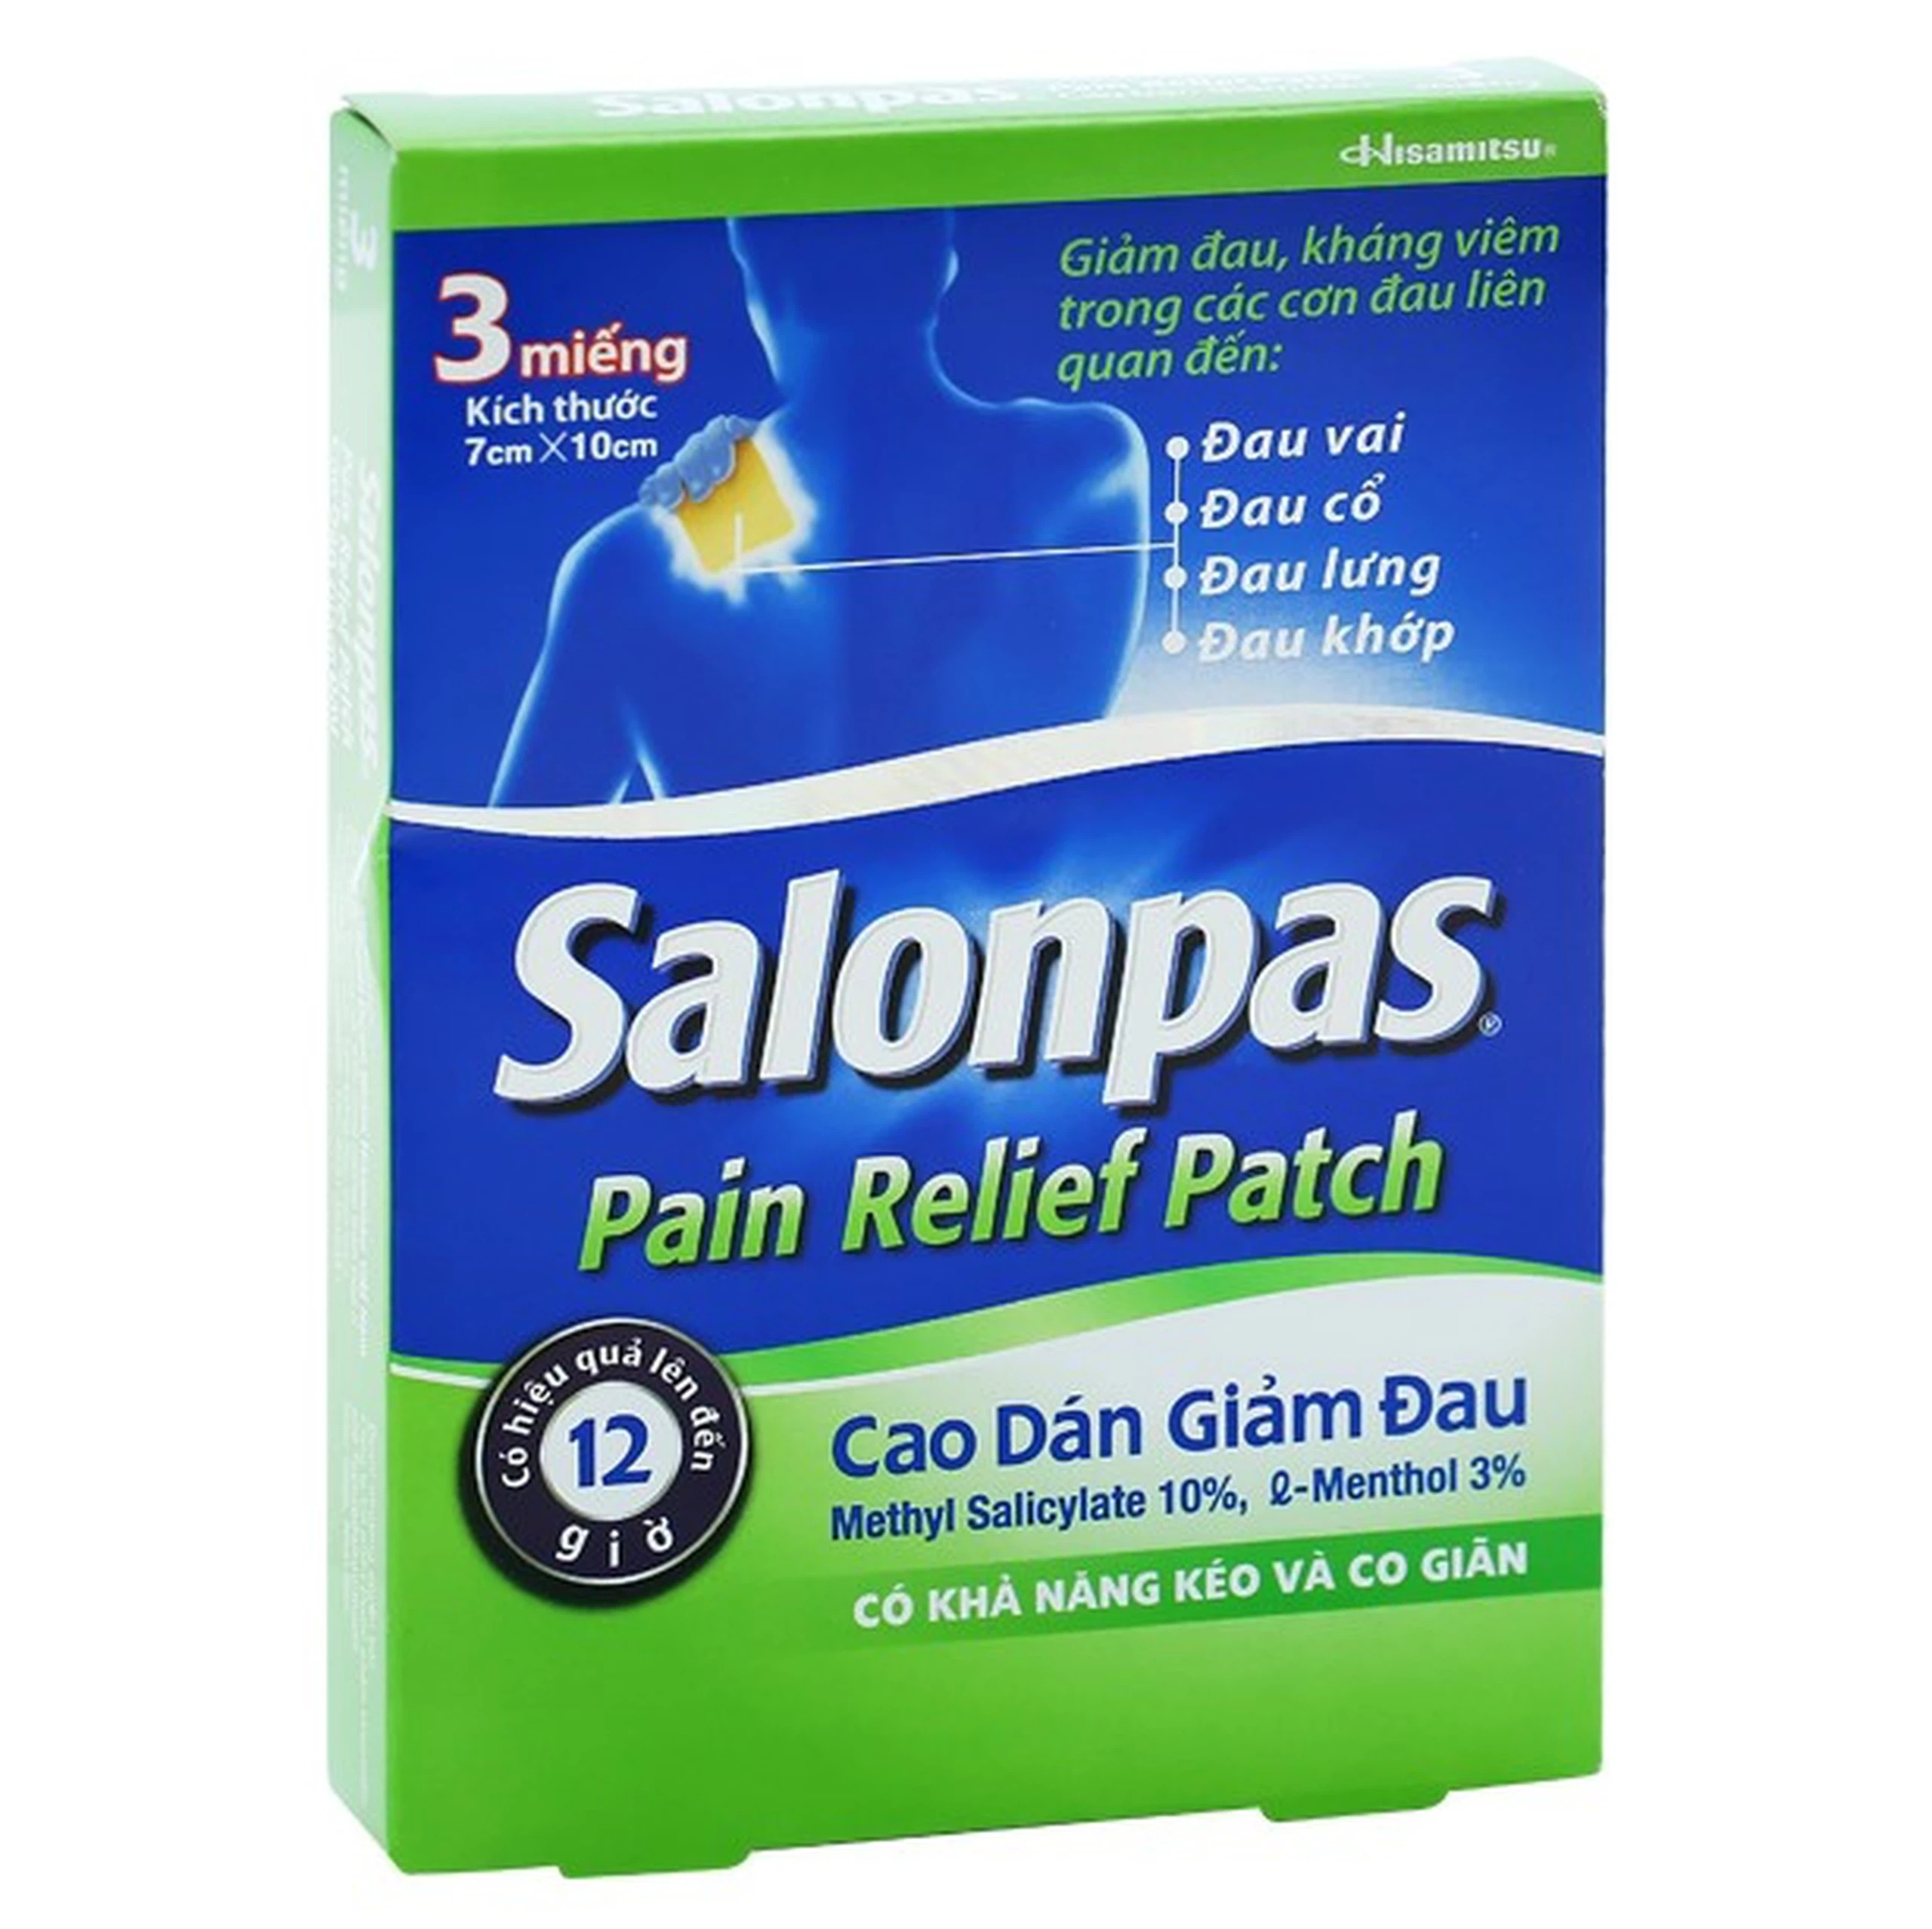 Cao dán giảm đau Salonpas Pain Relief Patch dùng trong các cơn đau vai, đau cổ (7cm x 10 cm - 3 miếng)